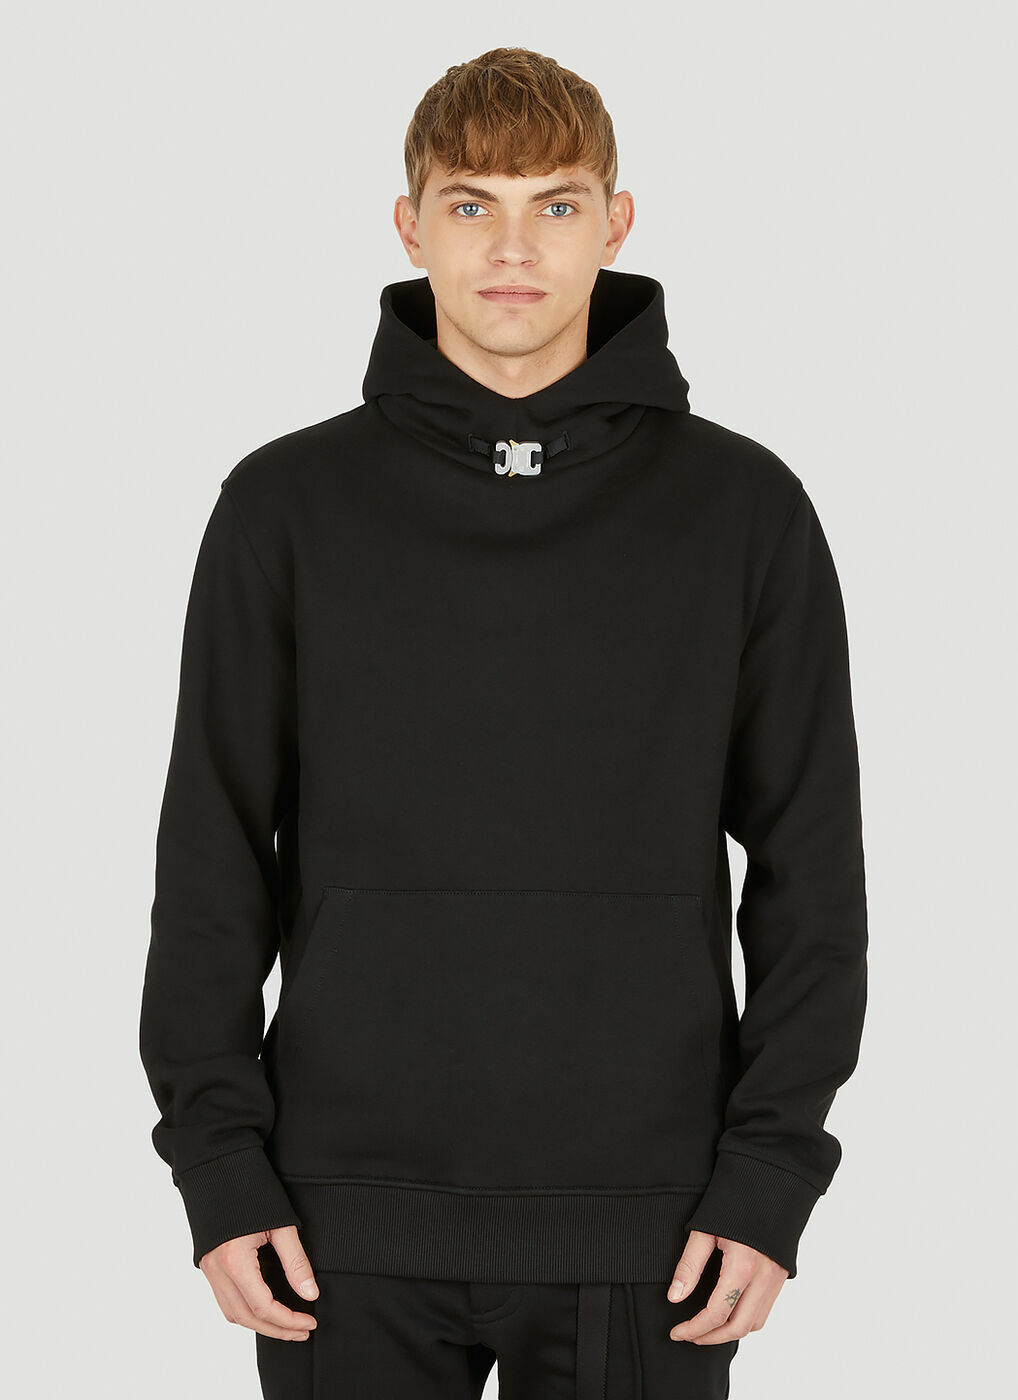 Buckle Hooded Sweatshirt in Black